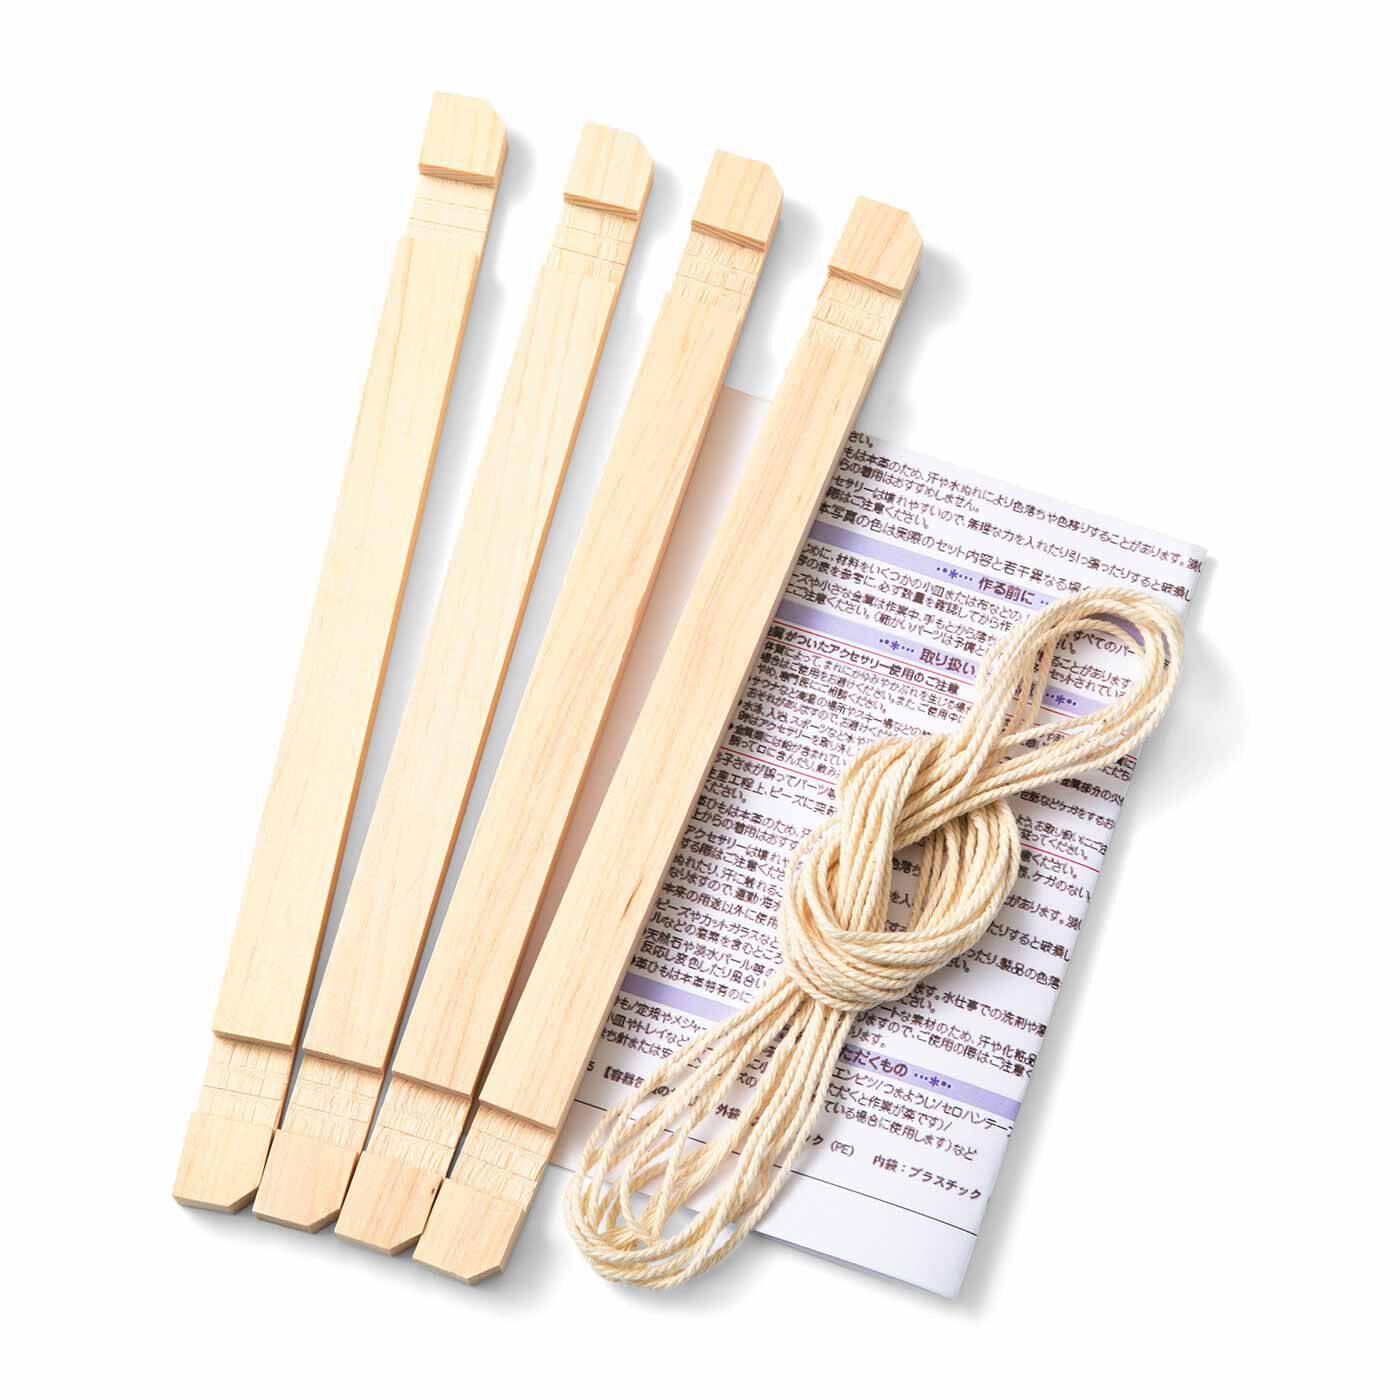 クチュリエ|ニャンドゥティが作れる専用木枠と糸のセット|●お届けセットの一式です。